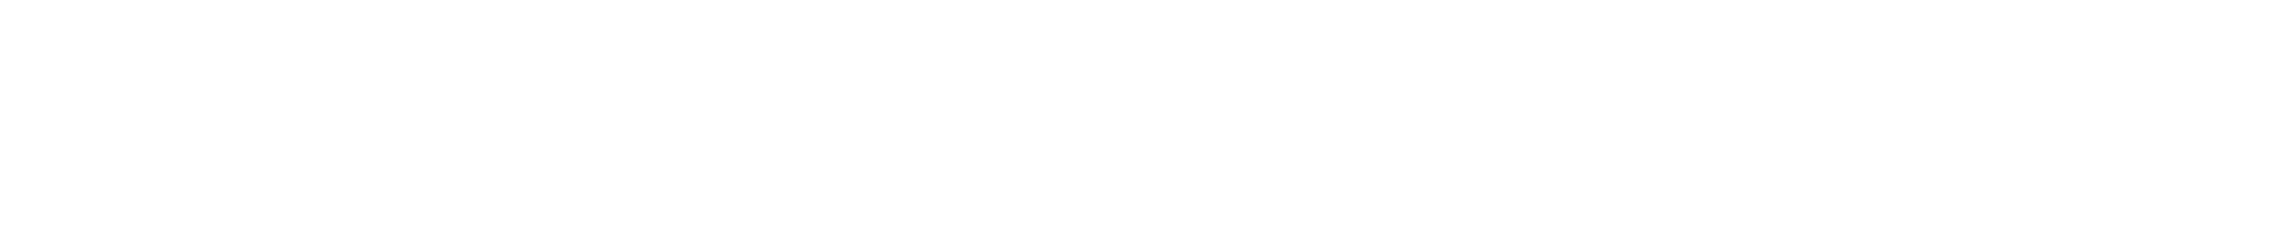 Kölner Rosenmontagszeitung 2022 Anzeigen-Sonderveröffentlichung von  Kölner Stadt-Anzeiger  und Kölnischer Rundschau